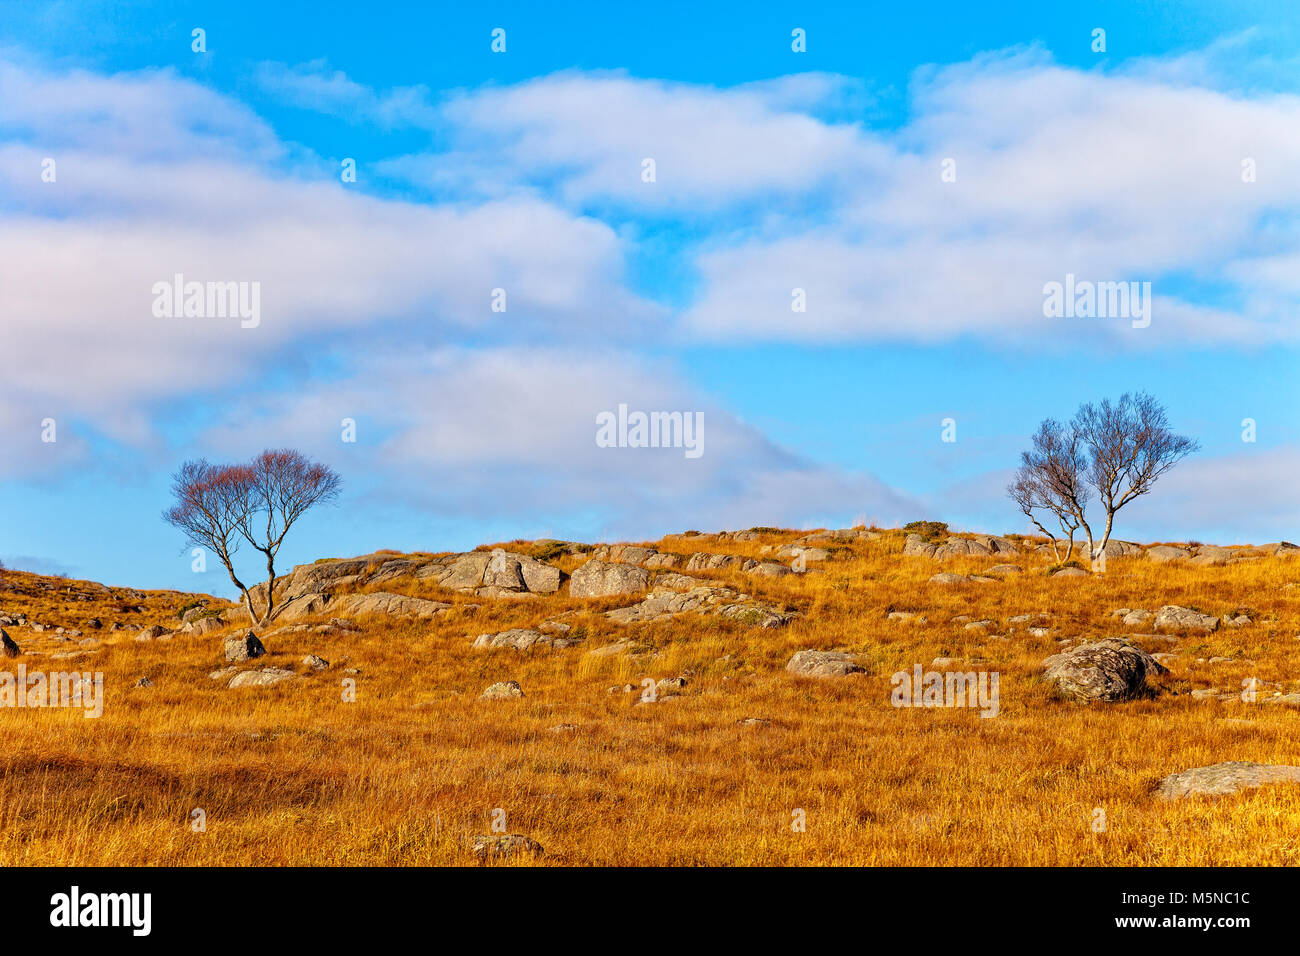 Norvegia paesaggio con alberi solitari sullo sfondo azzurro del cielo. Foto Stock